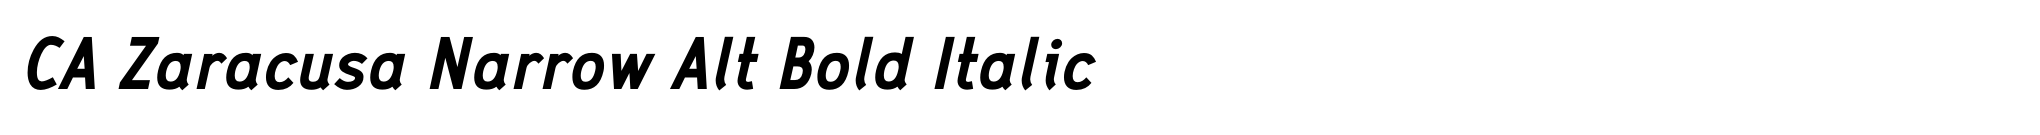 CA Zaracusa Narrow Alt Bold Italic image